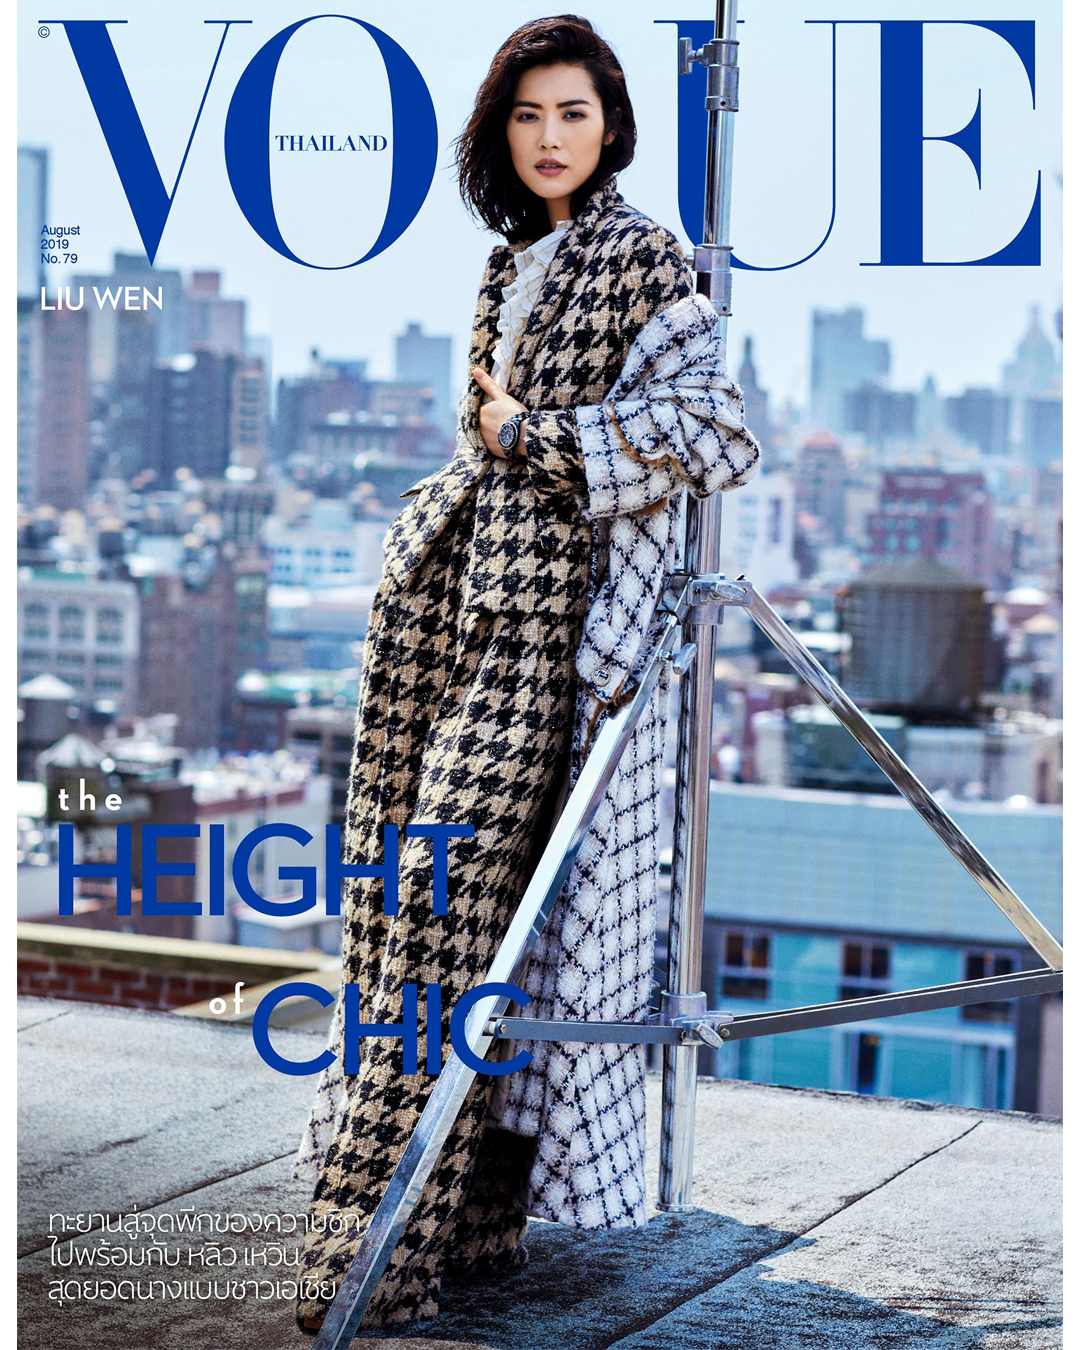 Vogue Thailand x Liu Wen x August 2019